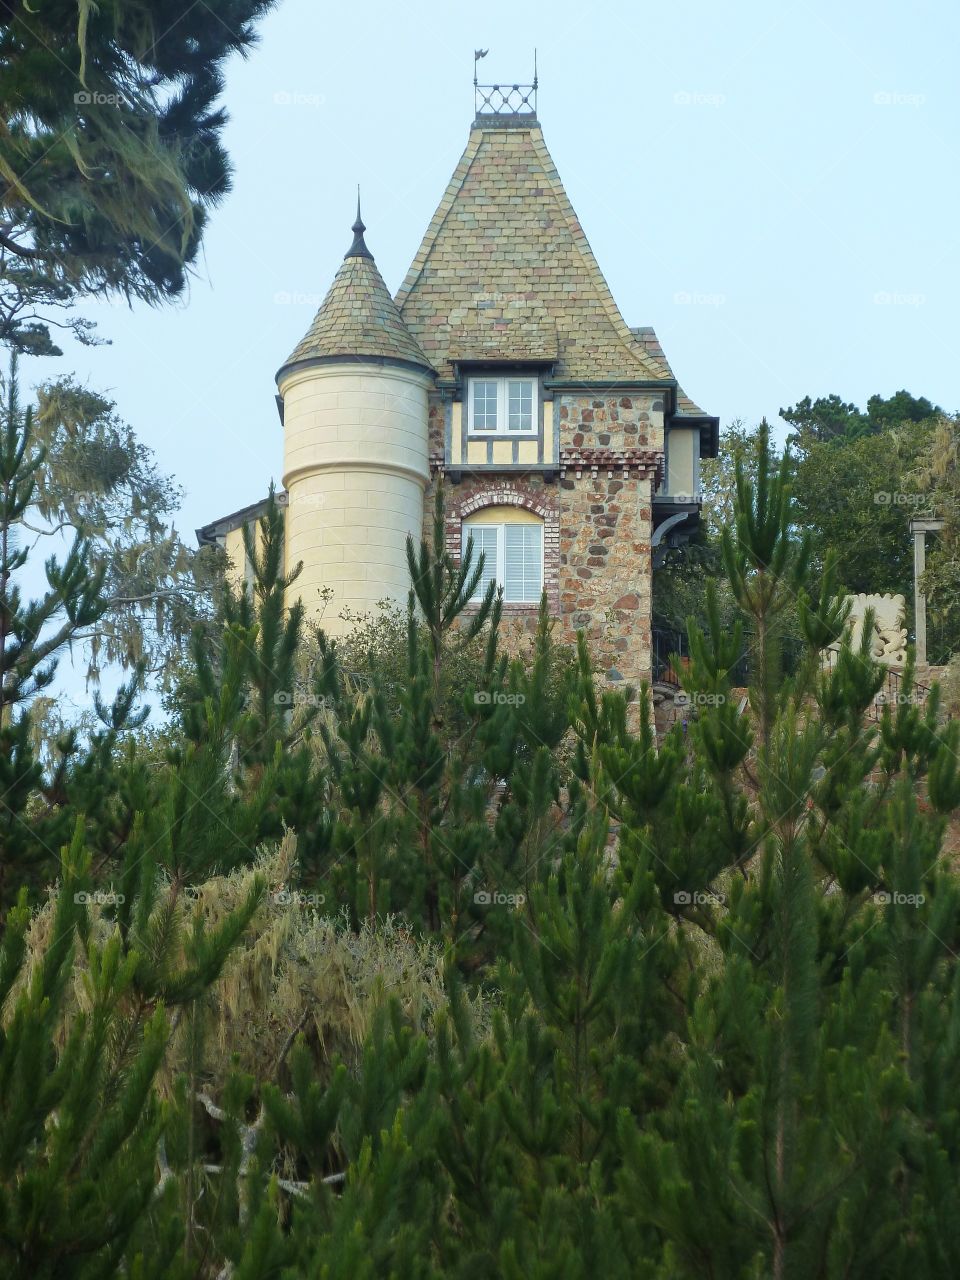 Fairytale Home. Carmel-By-the-Sea